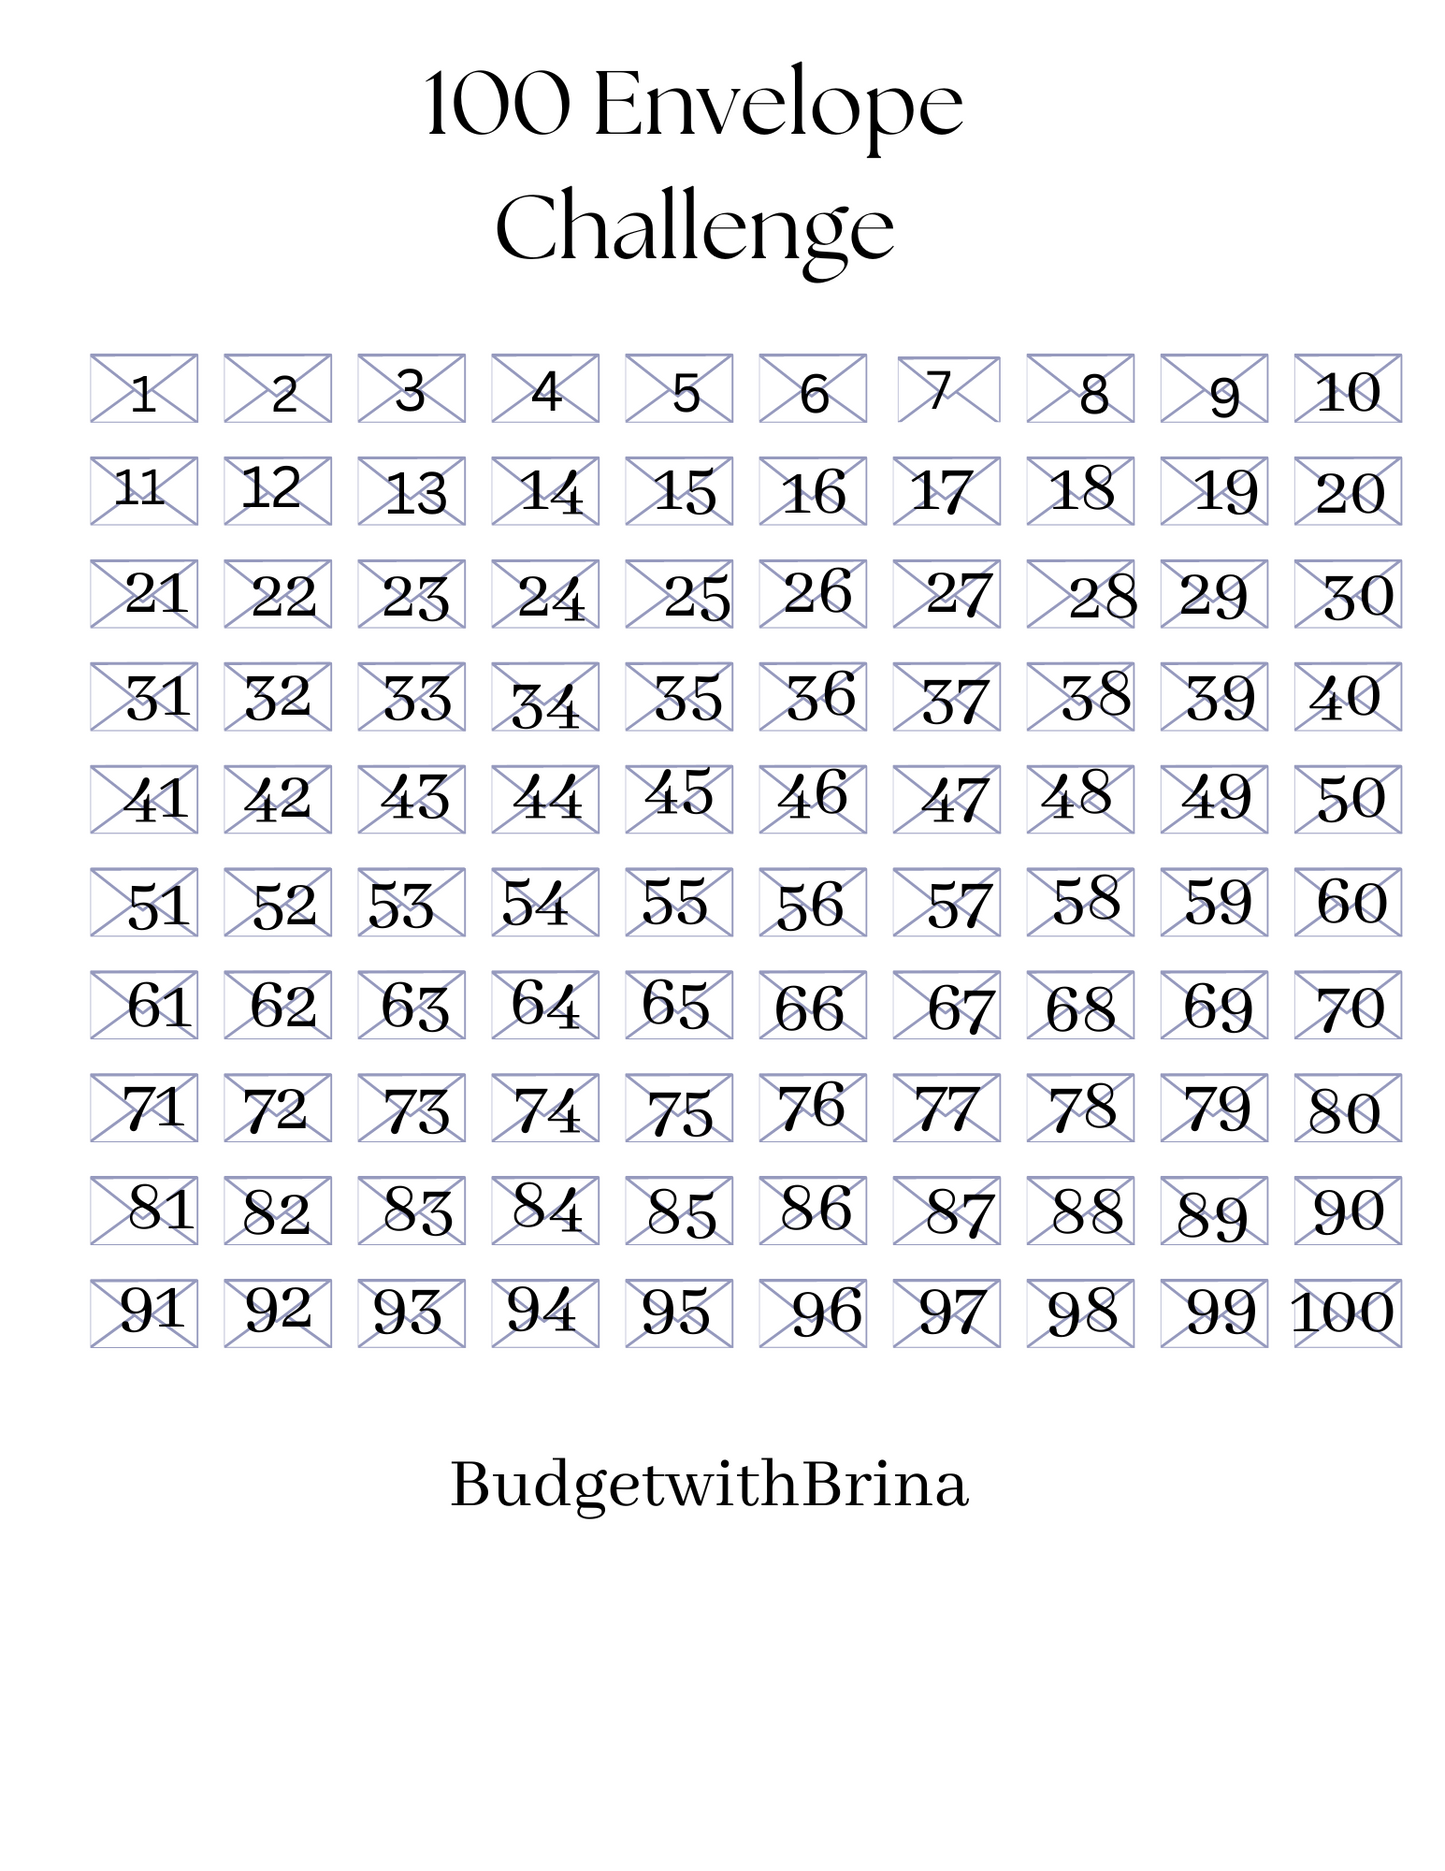 100 Envelope Challenge, 100 Envelope Challenge with Envelopes with Tracker, 100 Envelope Challenge Box Set, Money Savings Challenge